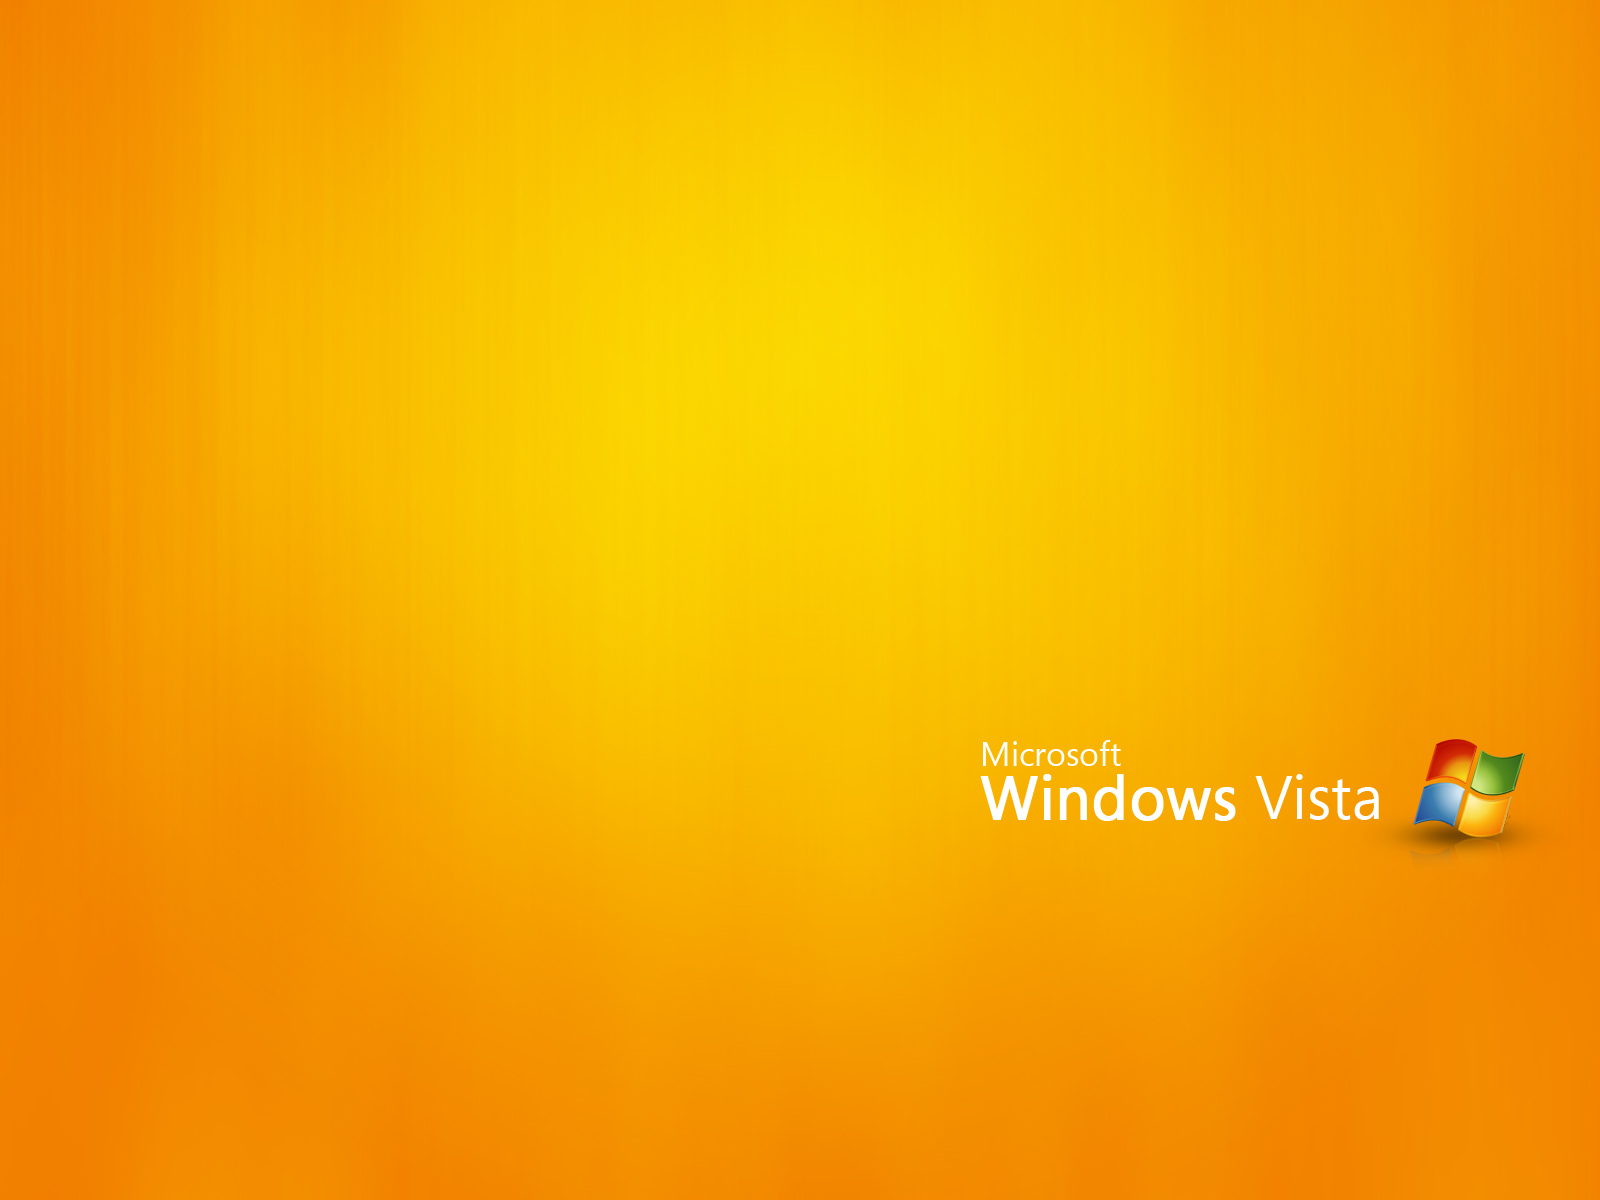 壁纸1600x1200Windows Vista壁纸 壁纸16壁纸 Windows Vista壁纸壁纸 Windows Vista壁纸图片 Windows Vista壁纸素材 系统壁纸 系统图库 系统图片素材桌面壁纸